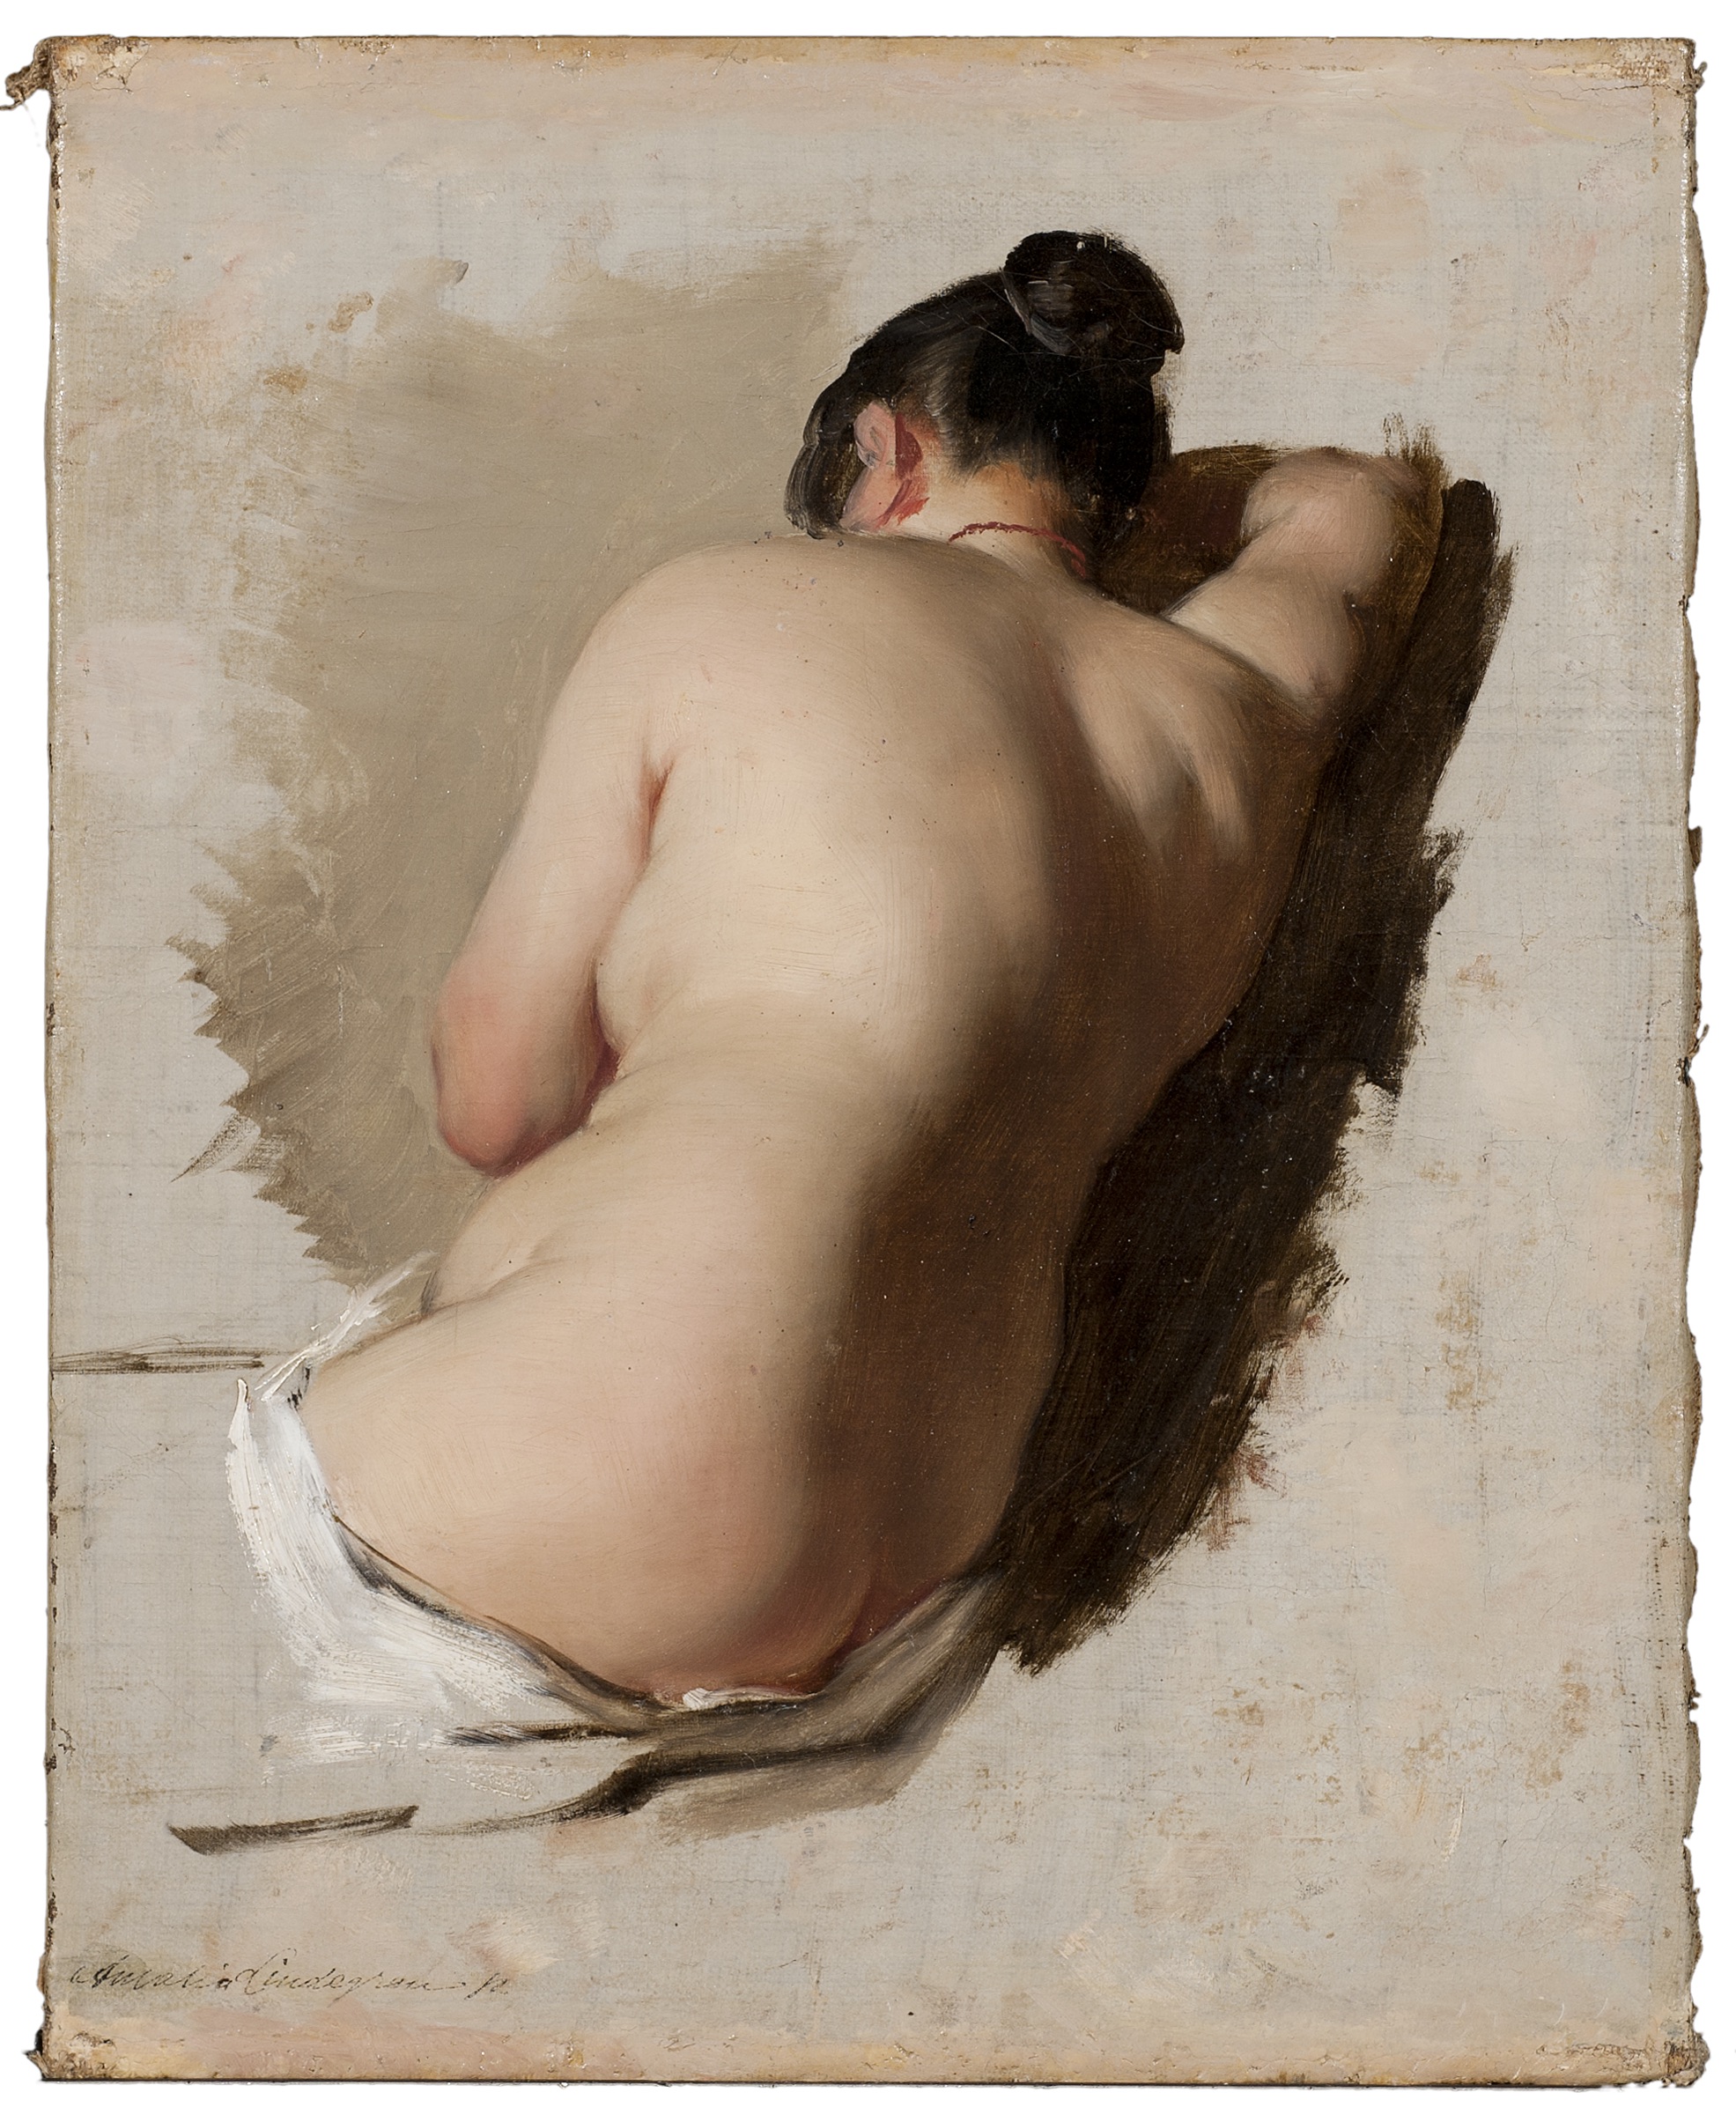 Ню by Amalia Lindegren - 1850 - 33,5 x 26,5 см 